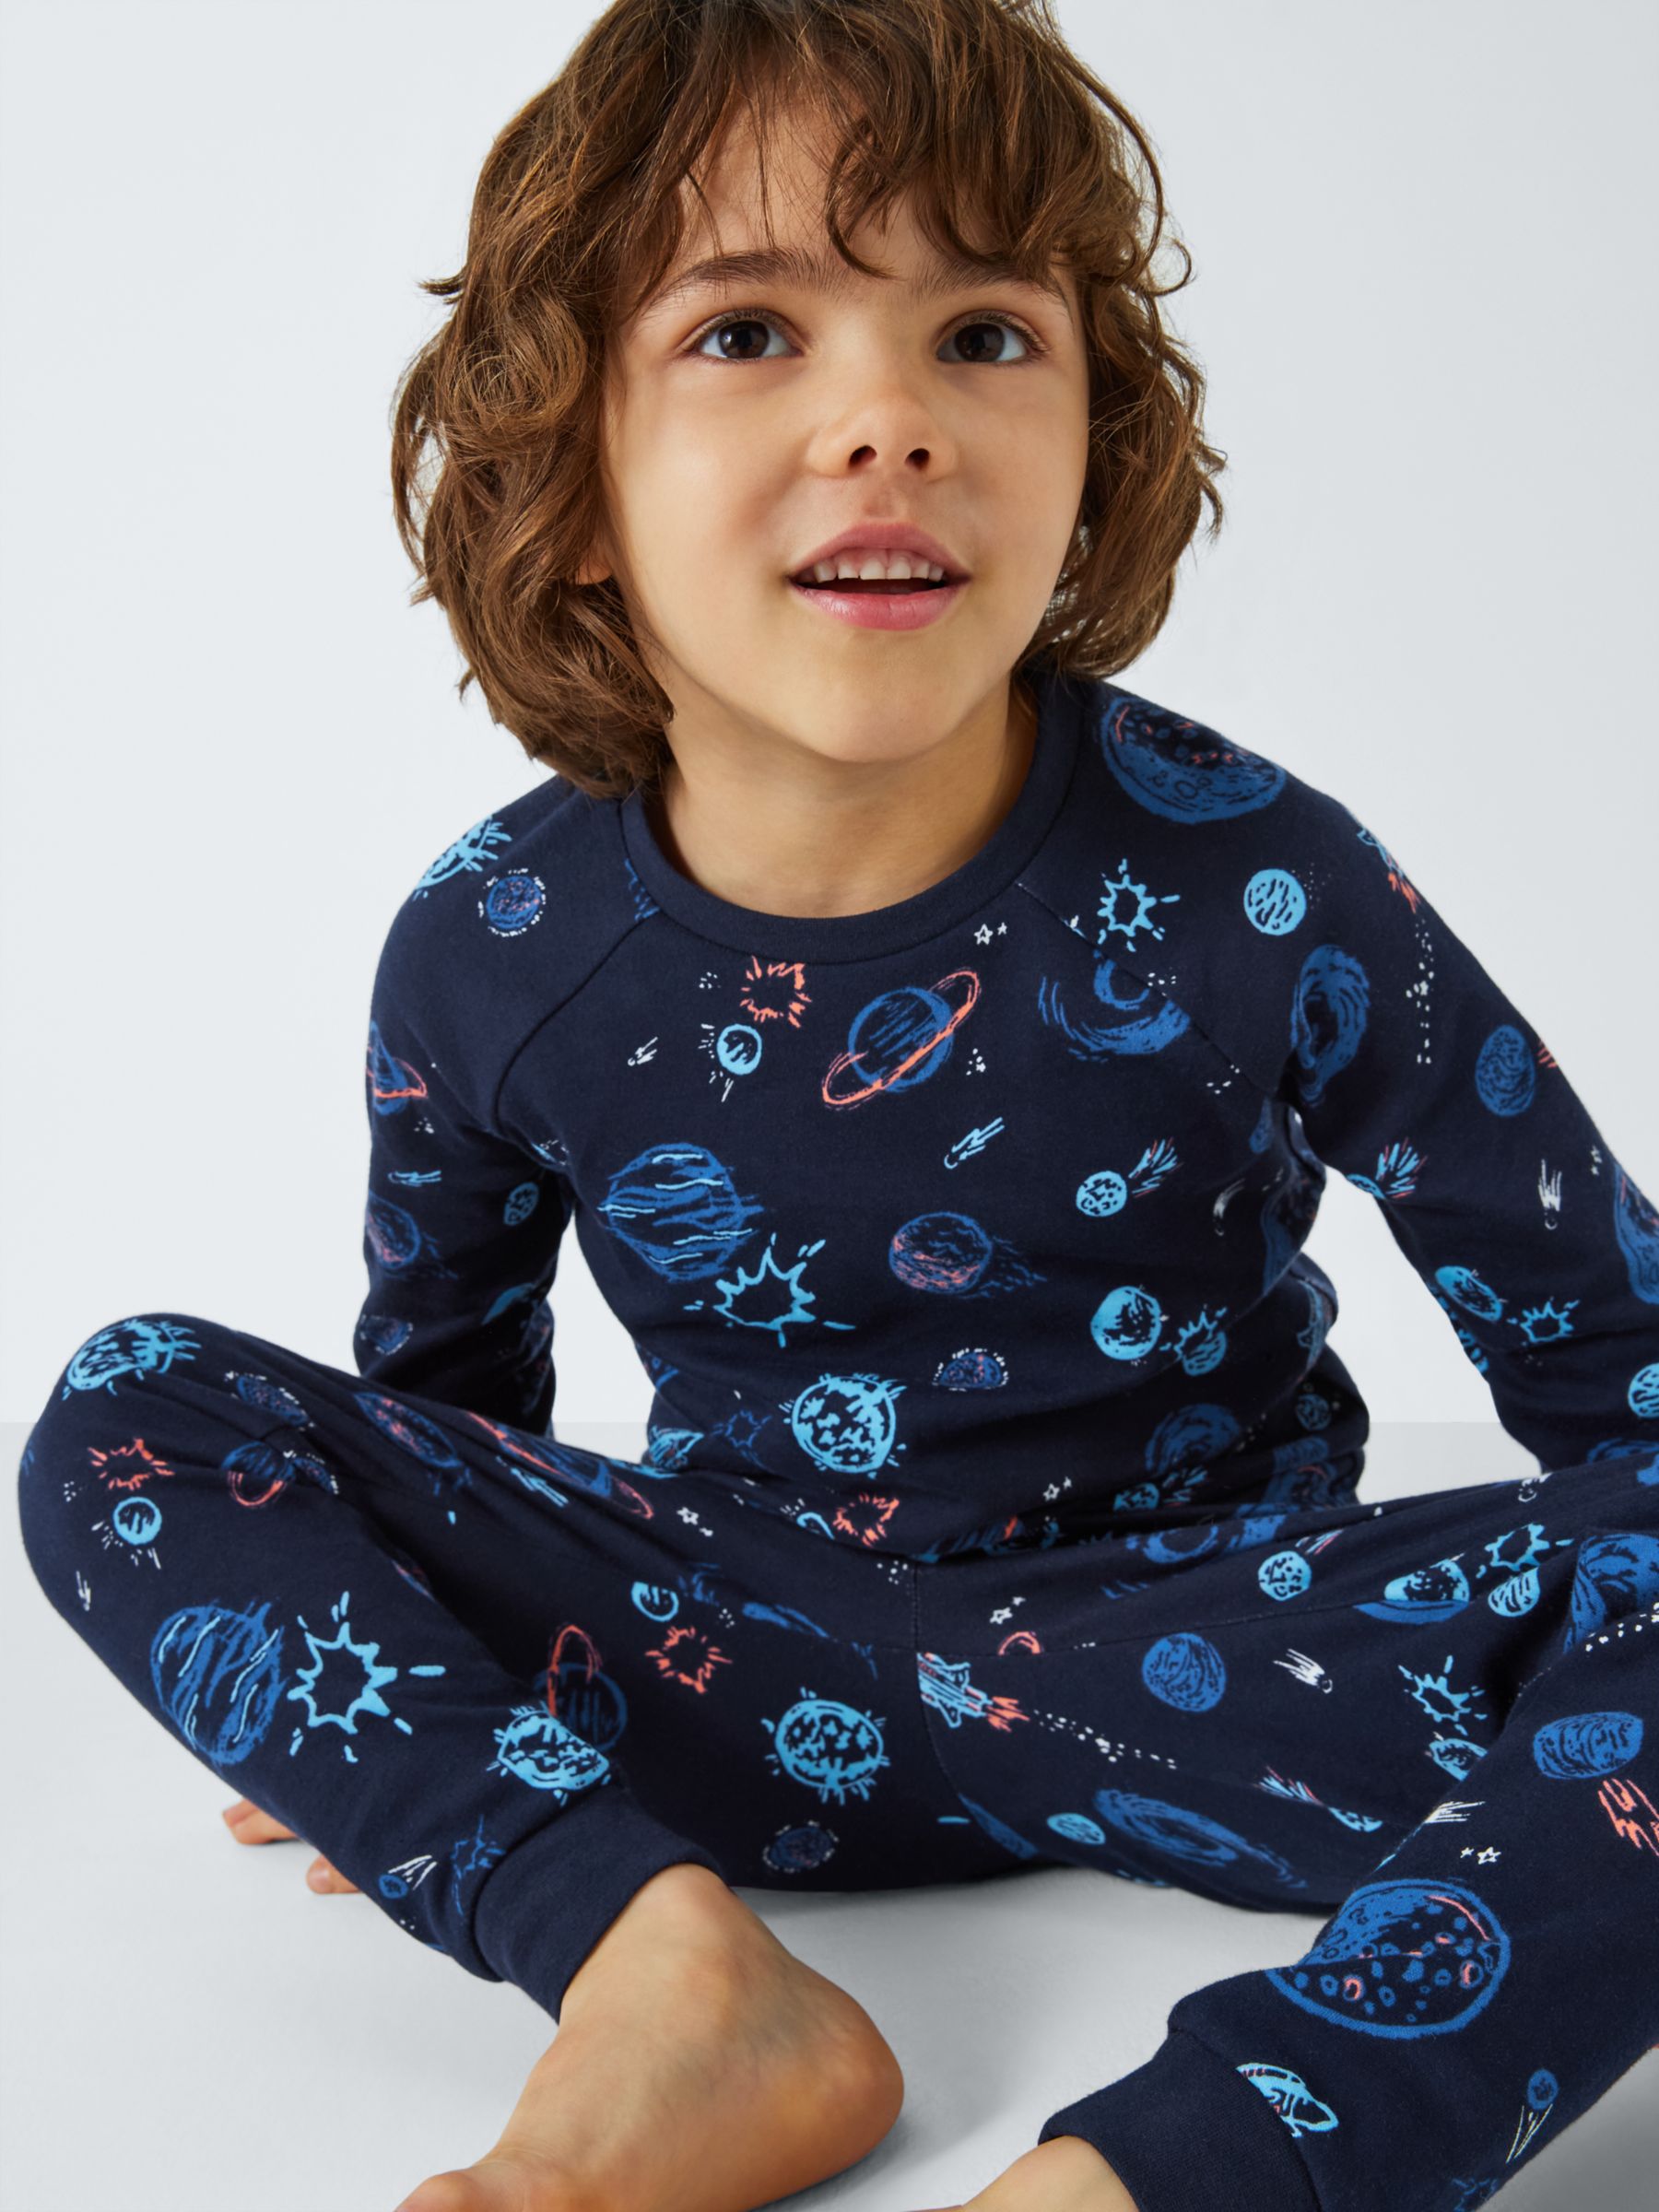 Buy John Lewis Kids' Outer Space Glow in the Dark Pyjamas, Pack of 2, Grey/Multi Online at johnlewis.com